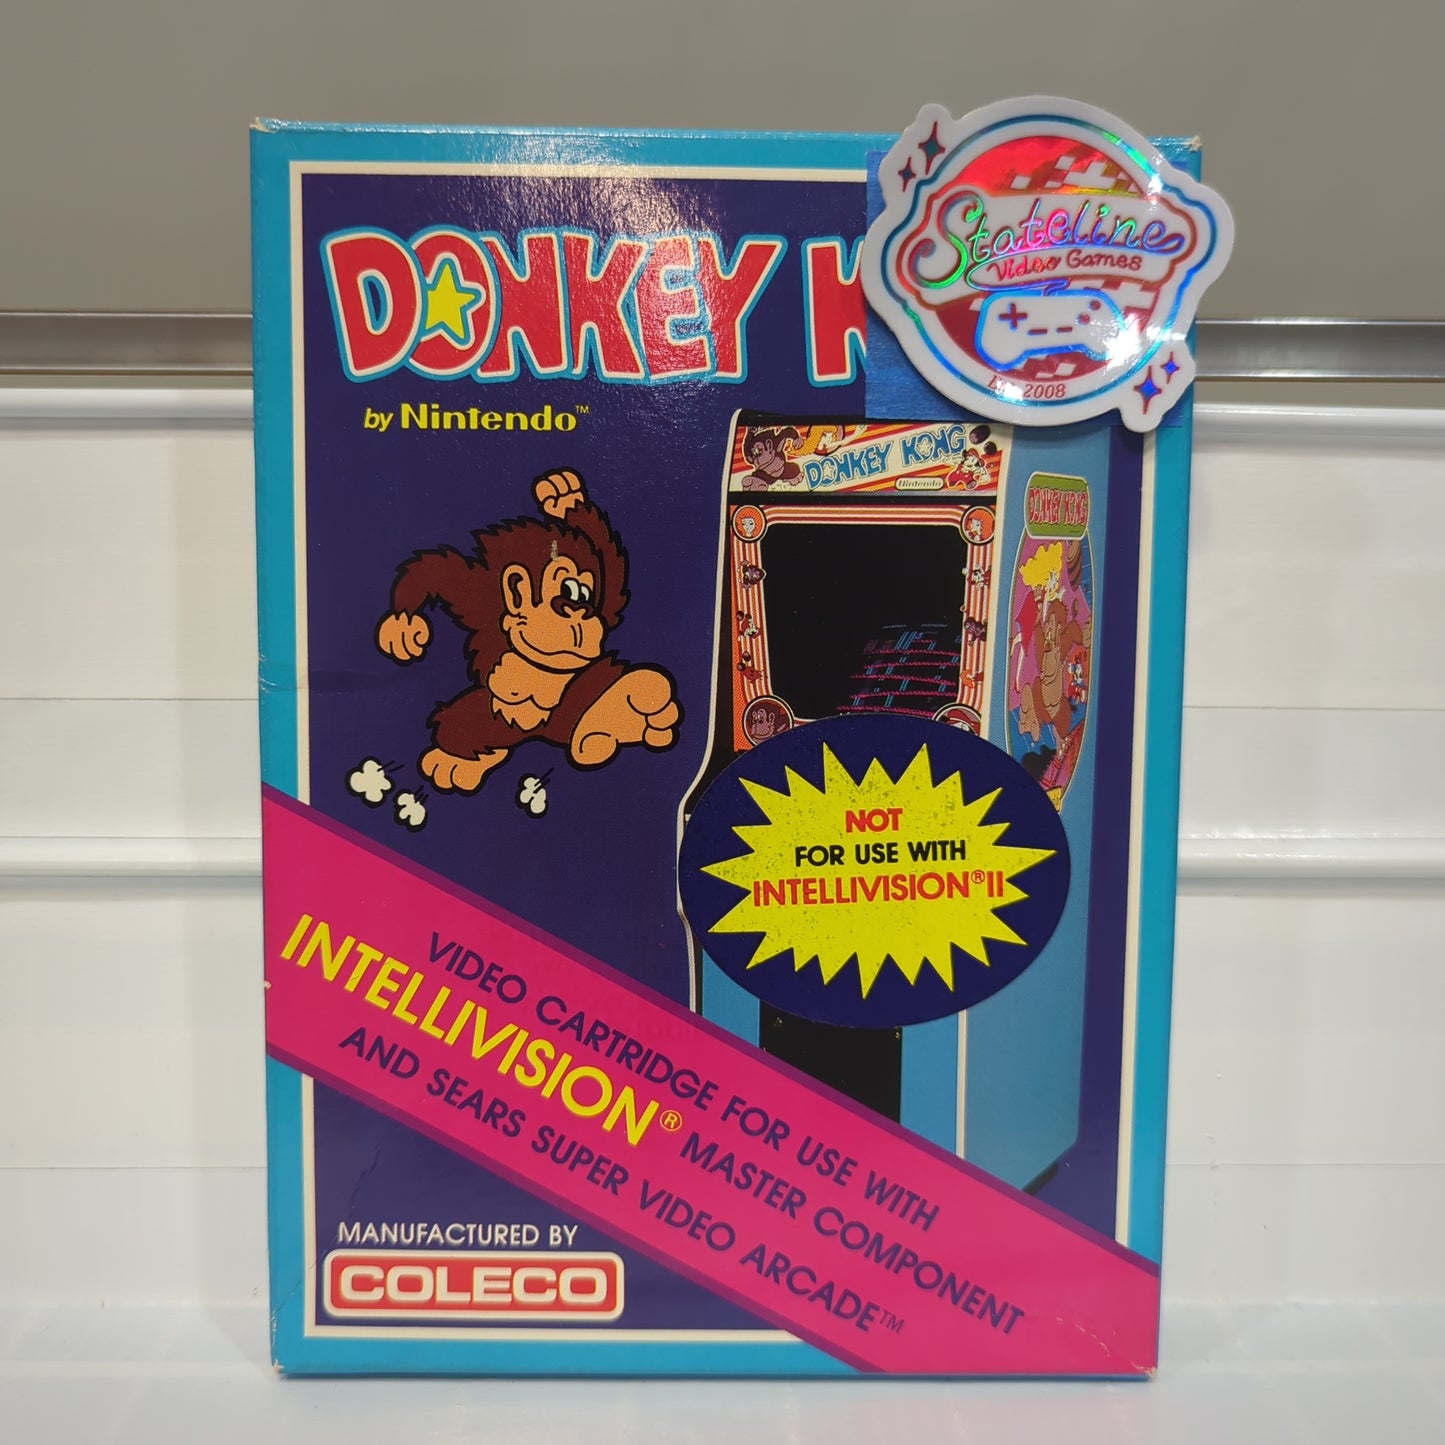 Donkey Kong - Intellivision